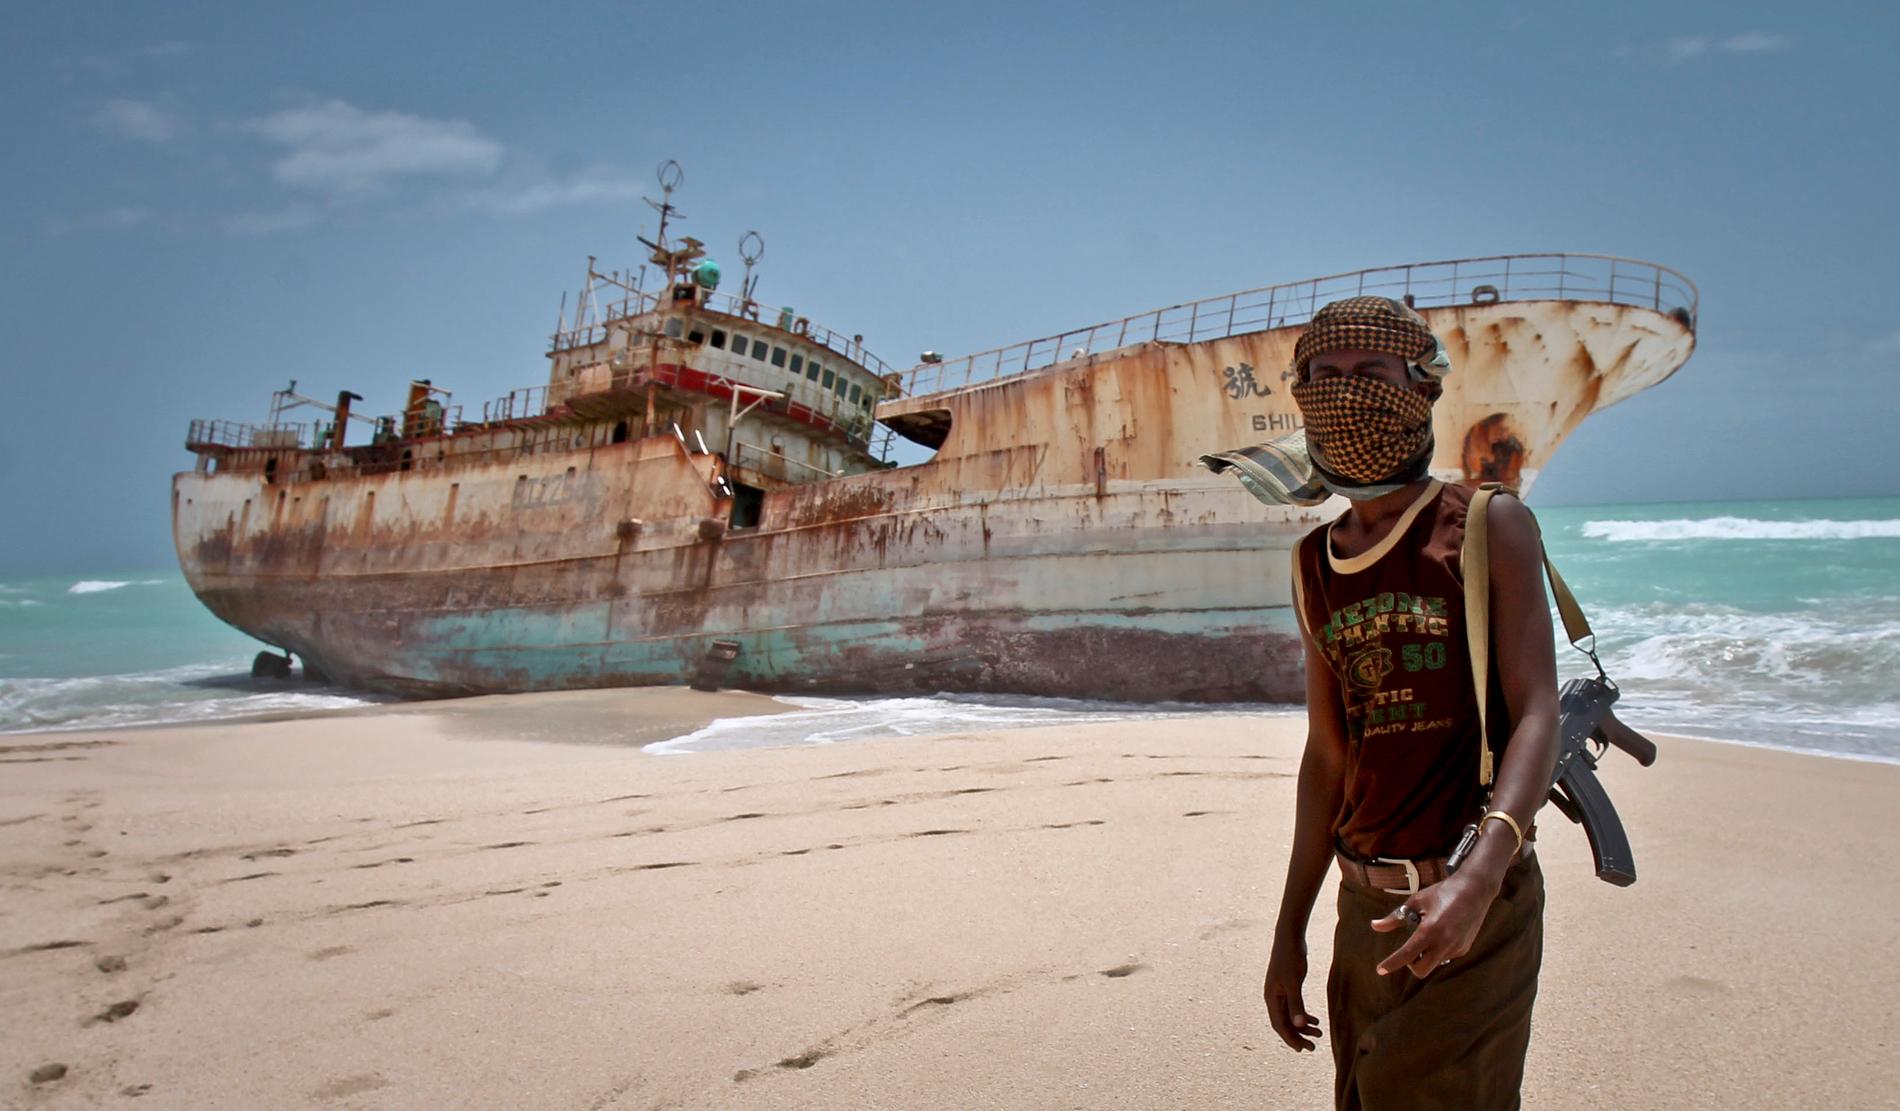 Arkivbild från 2012 på en somalisk fartygskapare framför en taiwanesisk fiskebåt som kapats utanför Somalias kust.